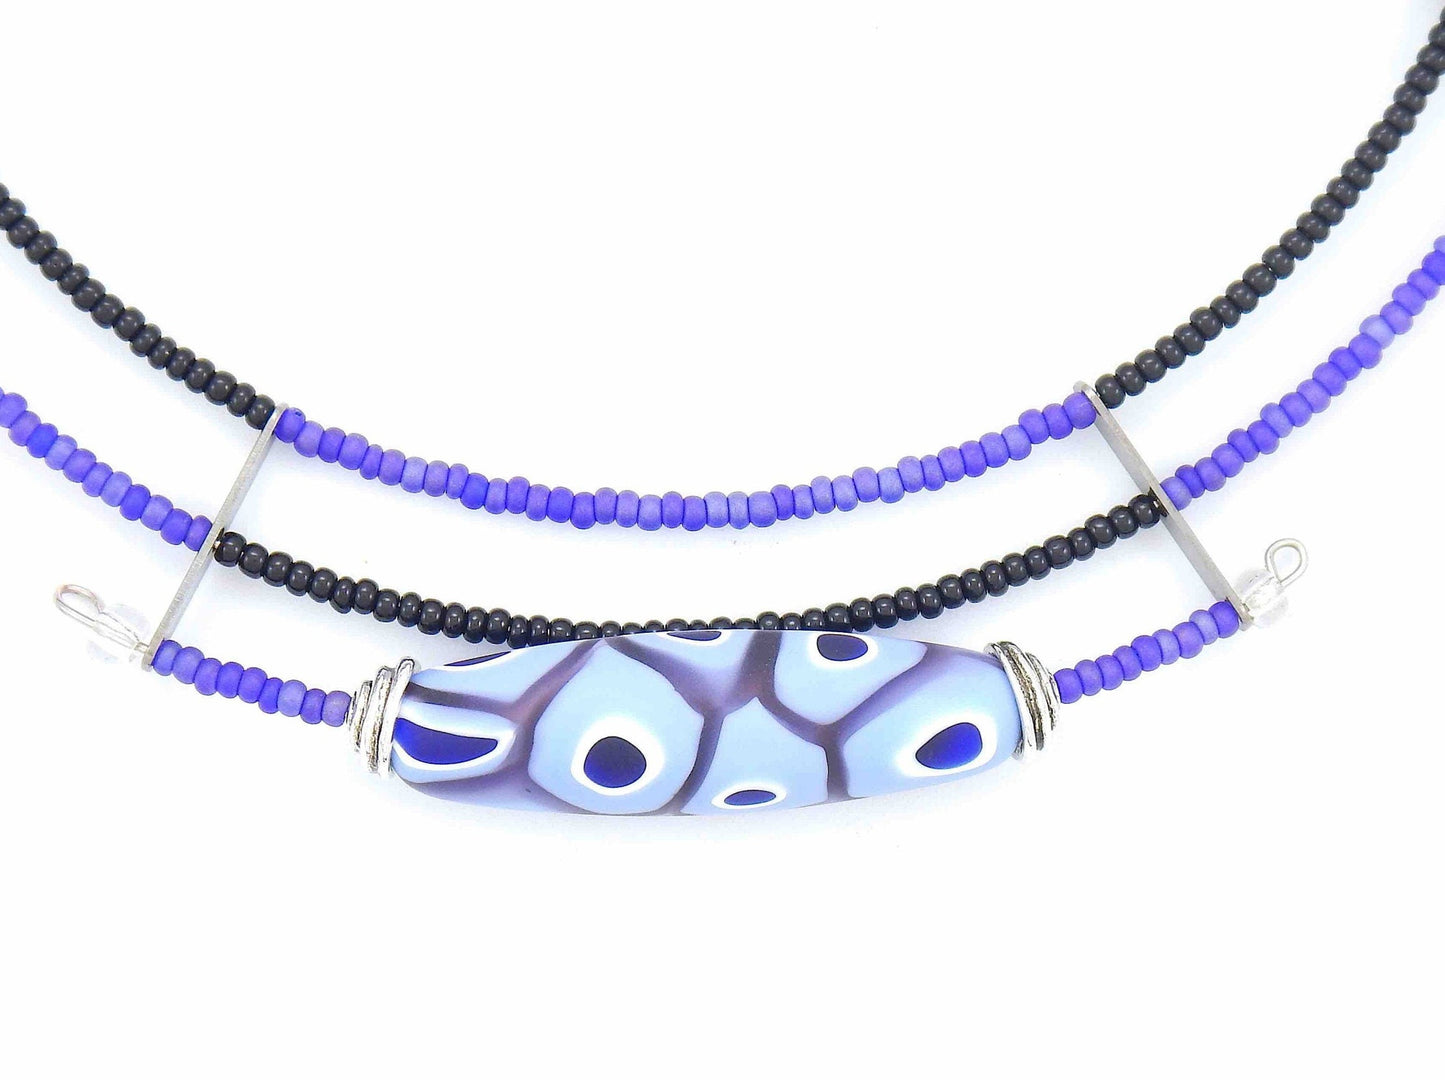 Collier court asymétrique avec bille de verre de Murano mat lilas et noir, motif d'yeux et de pois, fermoir métal sans nickel